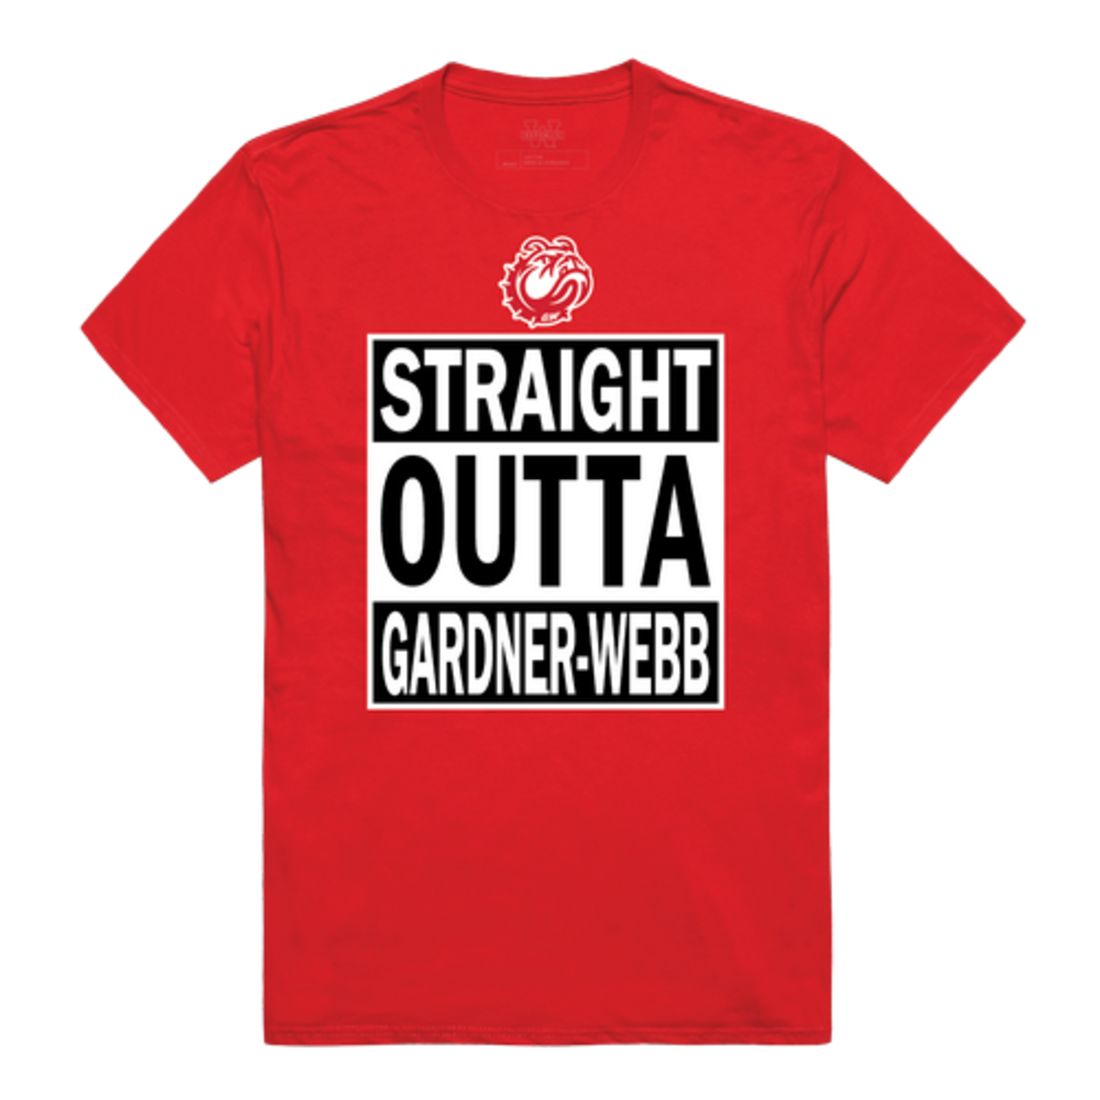 Gardner Webb Runnin' Bulldogs Straight Outta T-Shirt